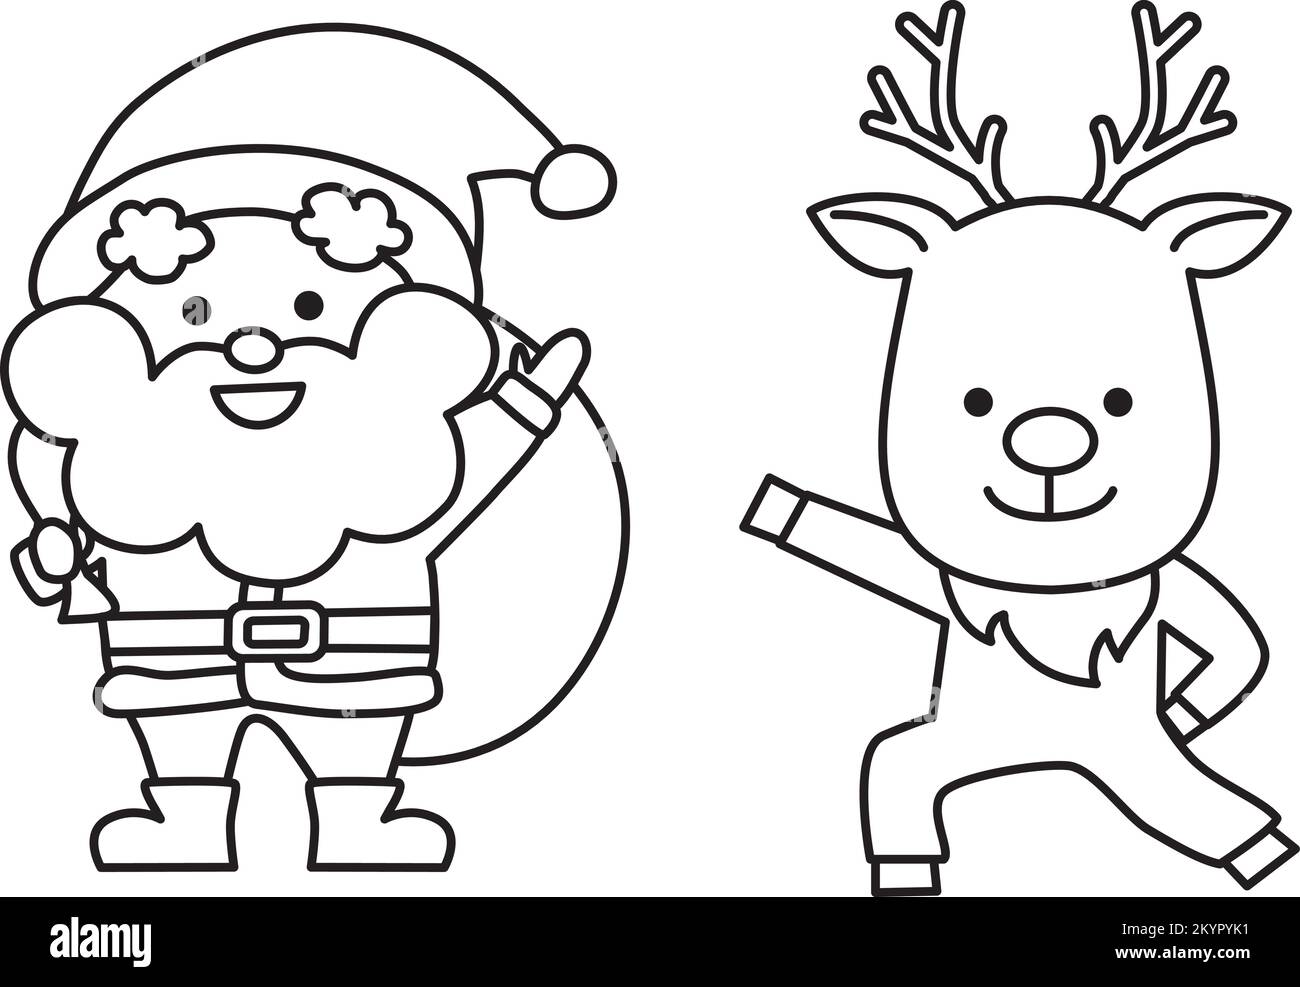 Strichzeichnung mit niedlichen Weihnachtsmann- und Rentierfiguren. Illustration für weihnachten. Stock Vektor